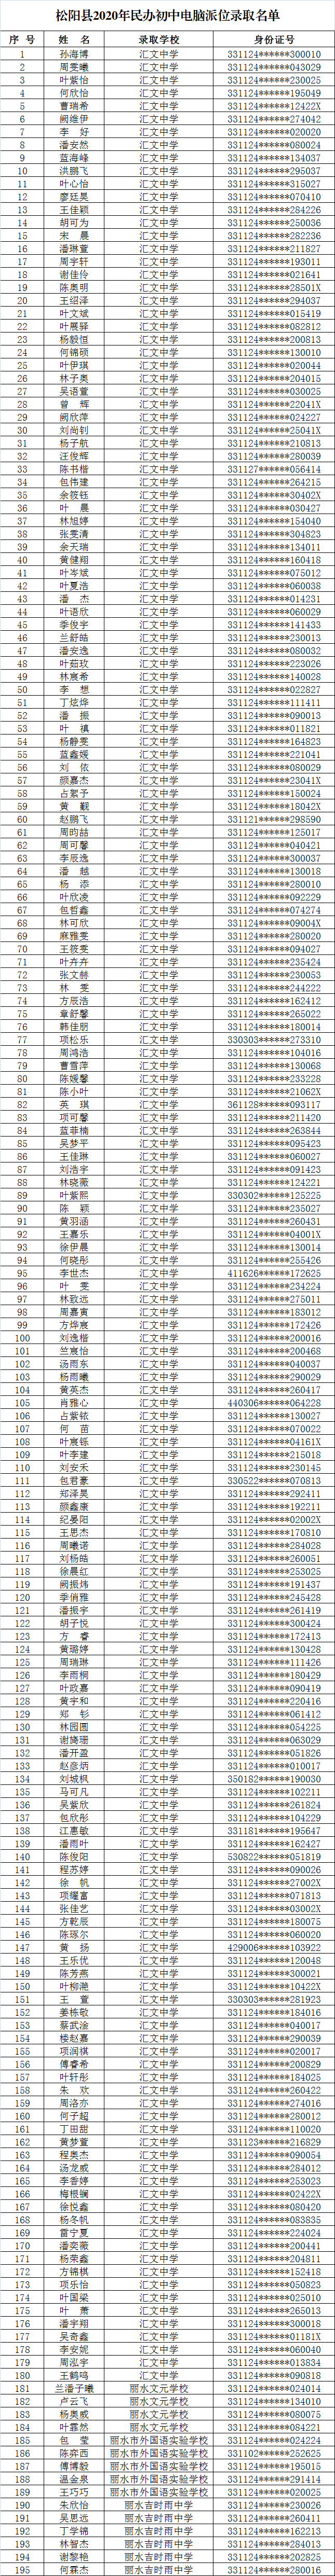 松阳县2020年民办初中招生电脑派位录取名单公示